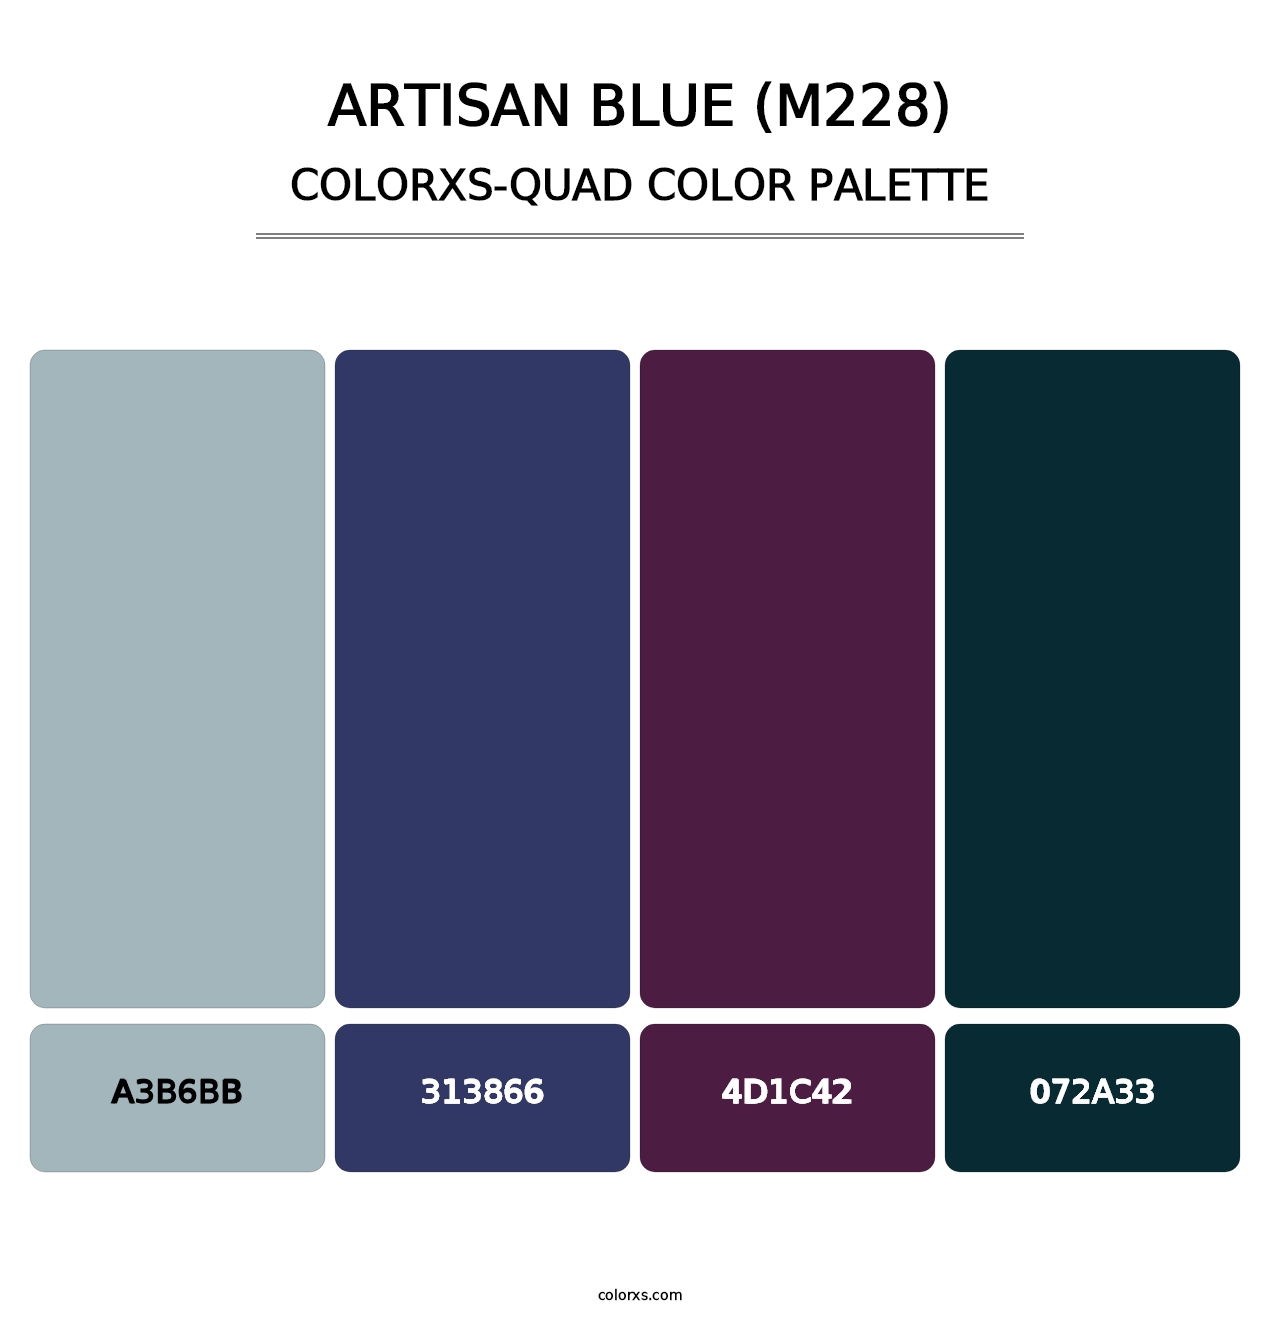 Artisan Blue (M228) - Colorxs Quad Palette